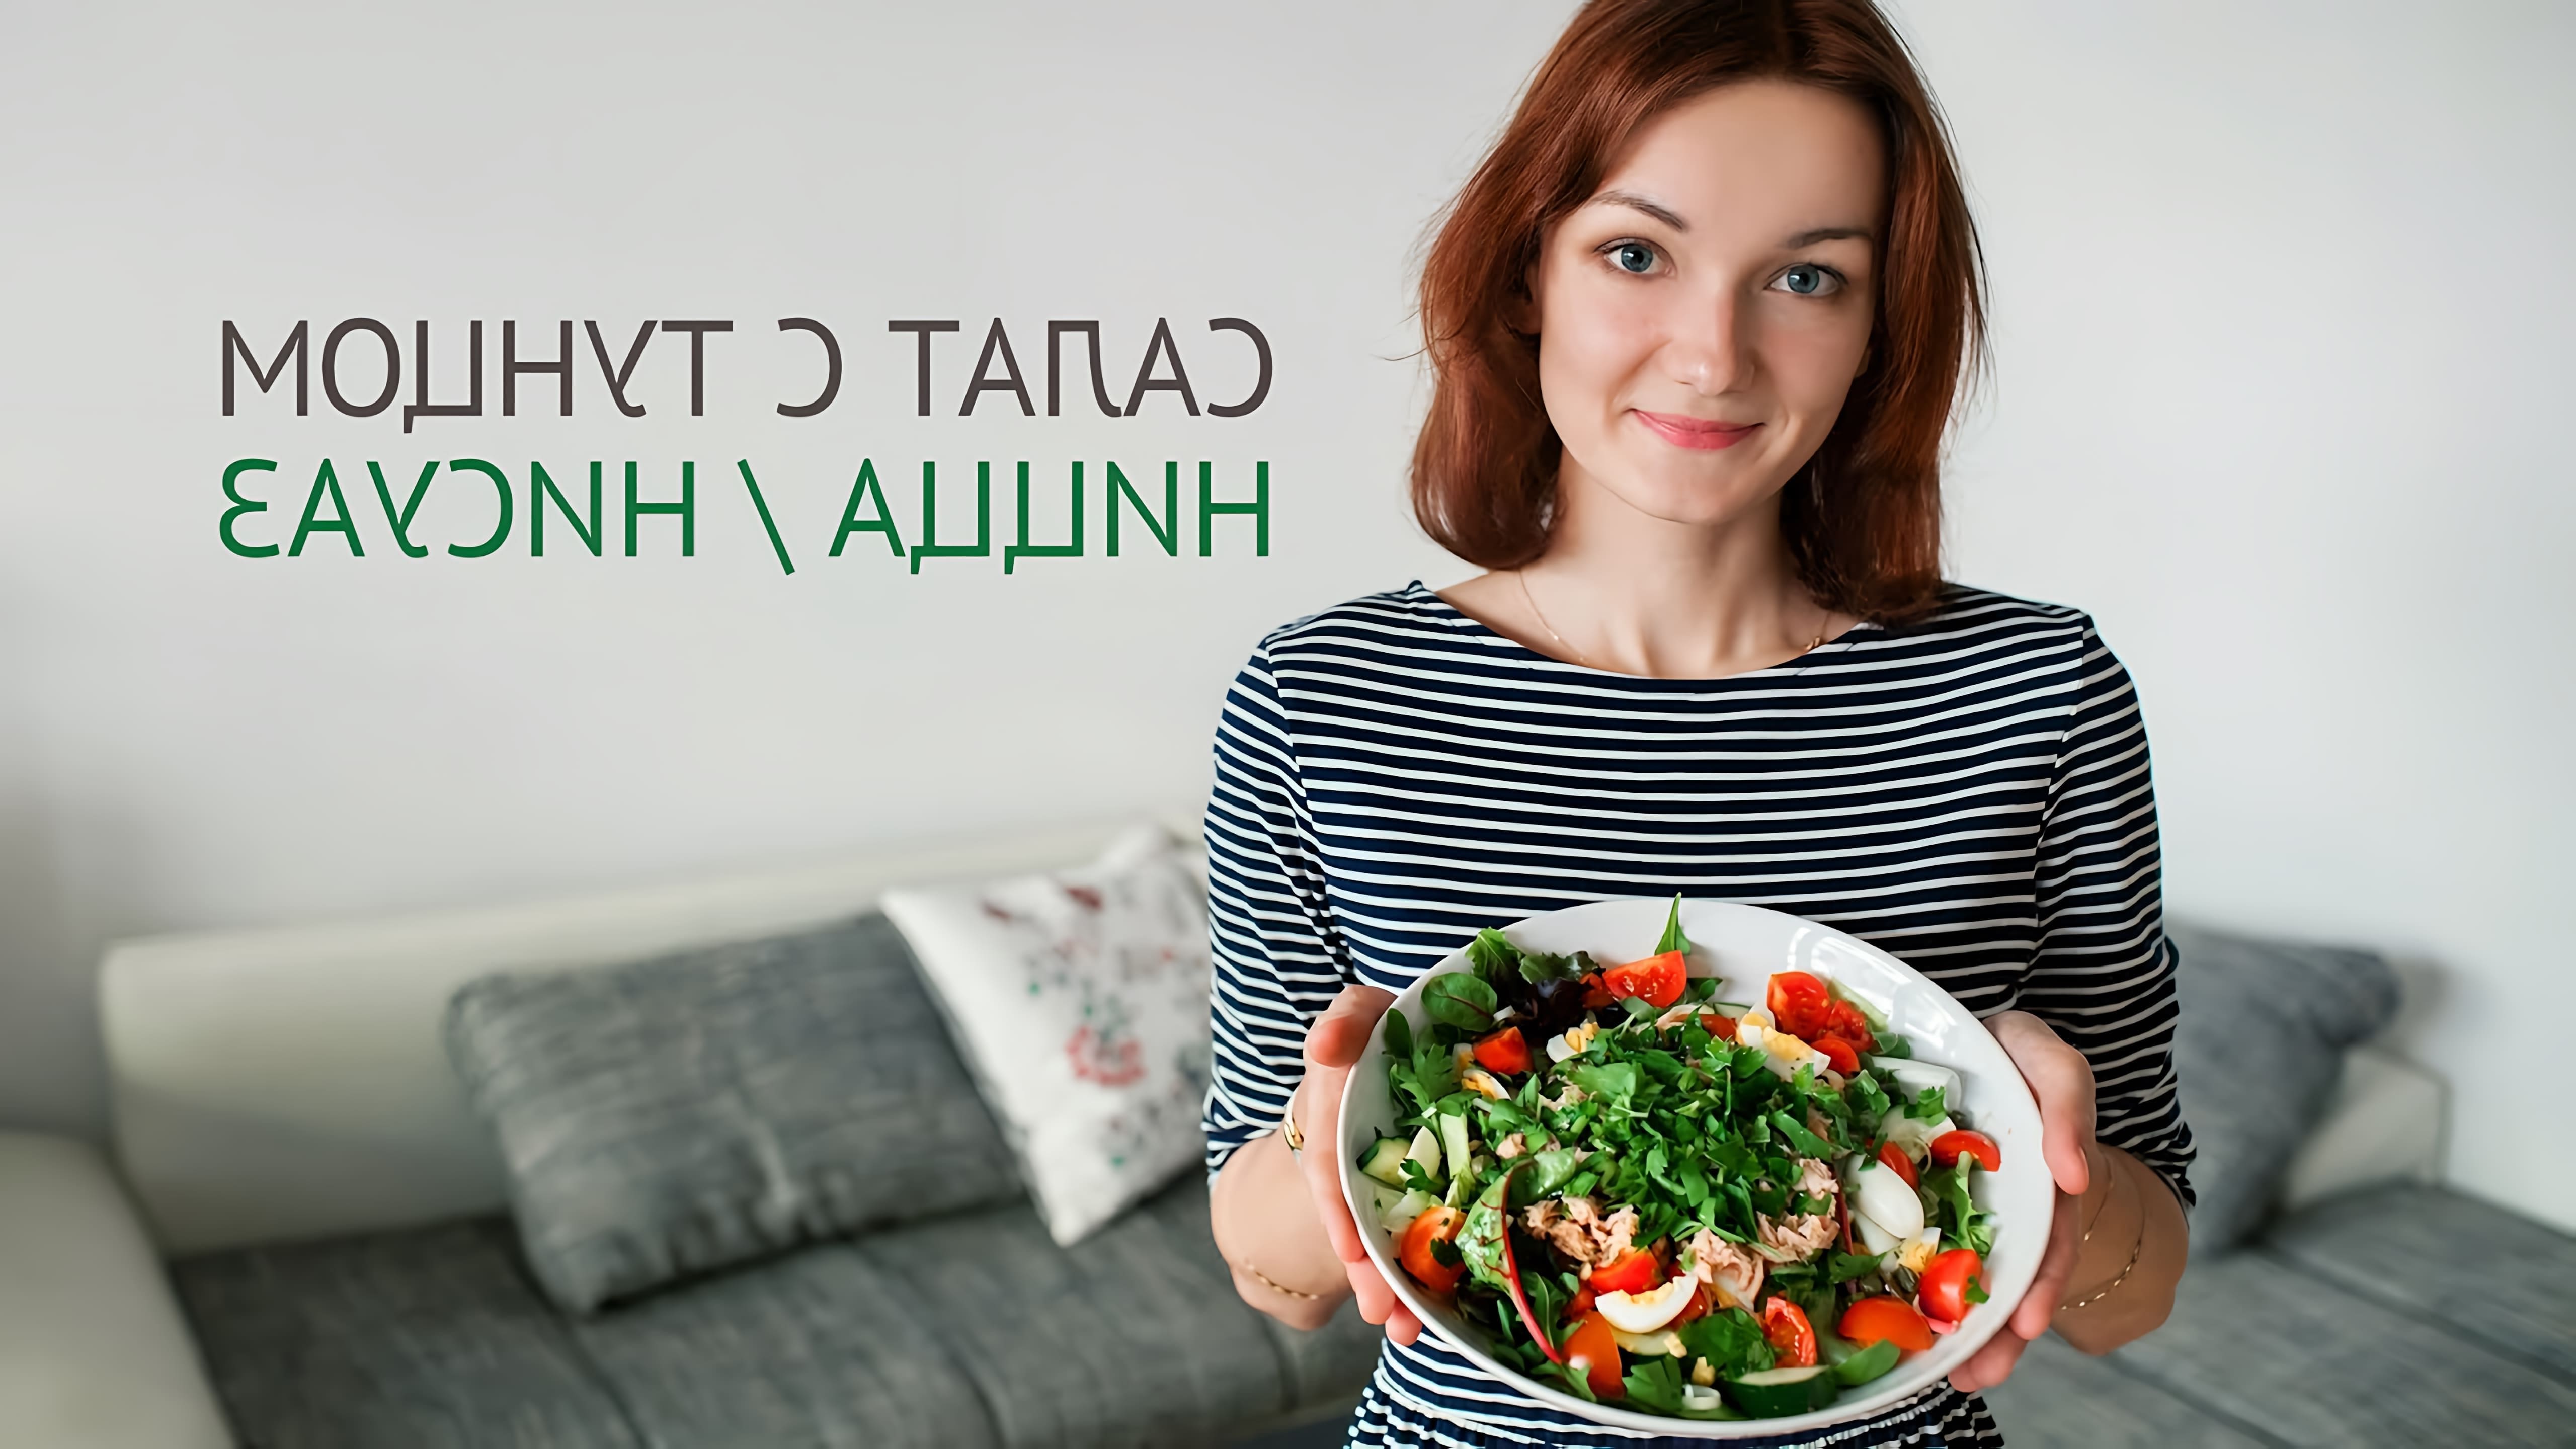 В этом видео Наташа показывает, как приготовить салат Нисуаз, который она впервые попробовала во Франции